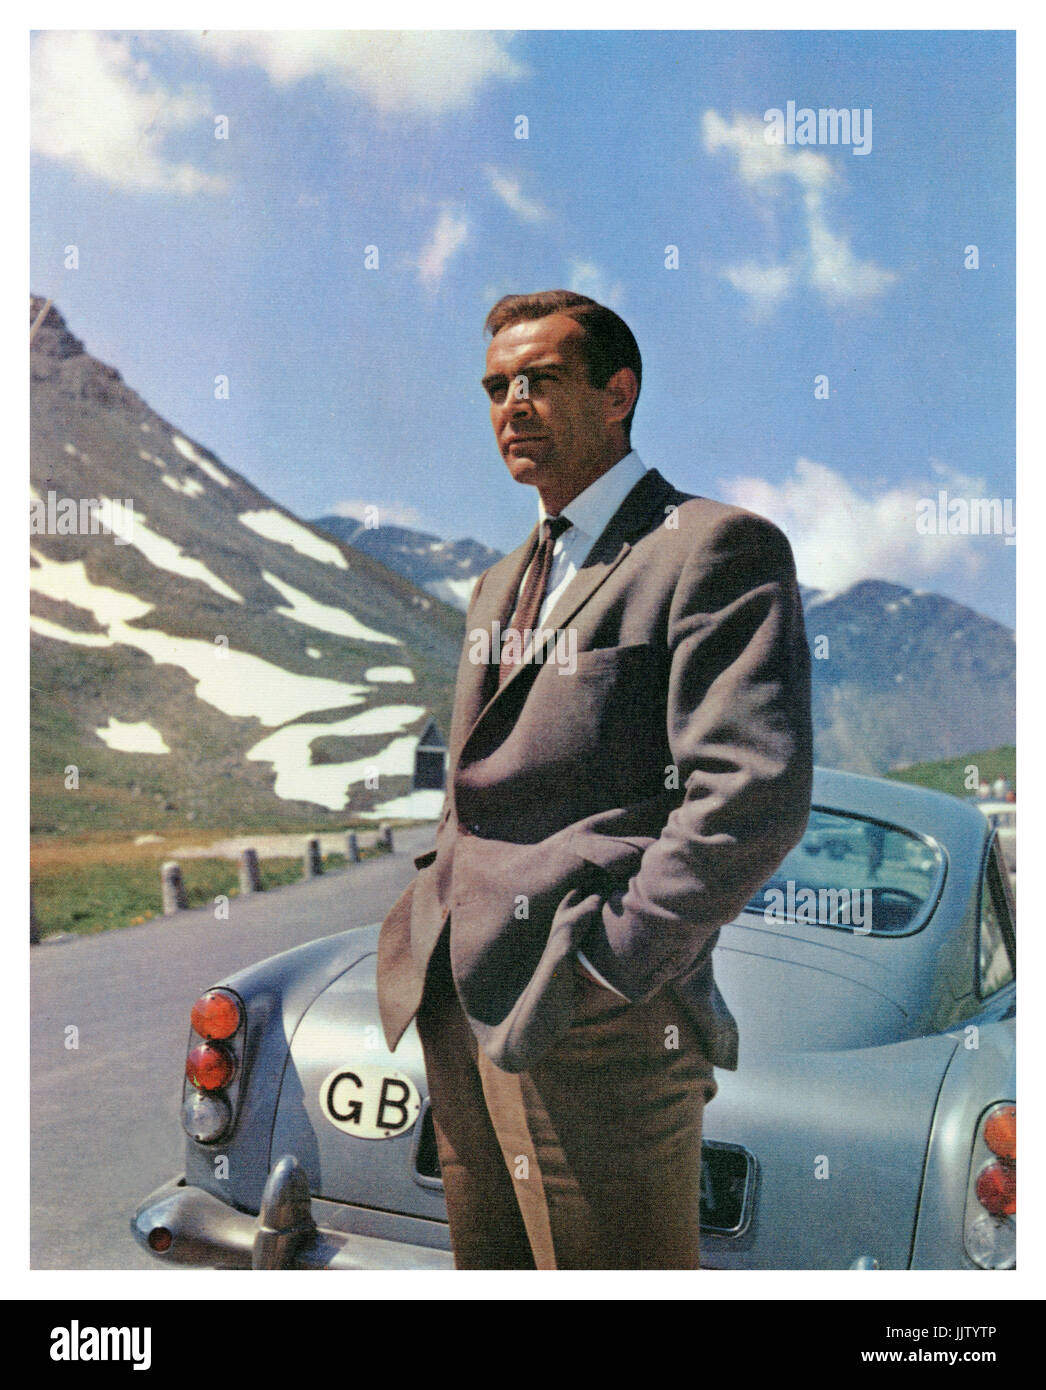 GOLDFINGER James Bond Aston Martin DB5 (Sean Connery) in den Schweizer  Alpen mit dem Aston Martin DB5 aus dem James Bond 007 Film GOLDFINGER 1964  Stockfotografie - Alamy